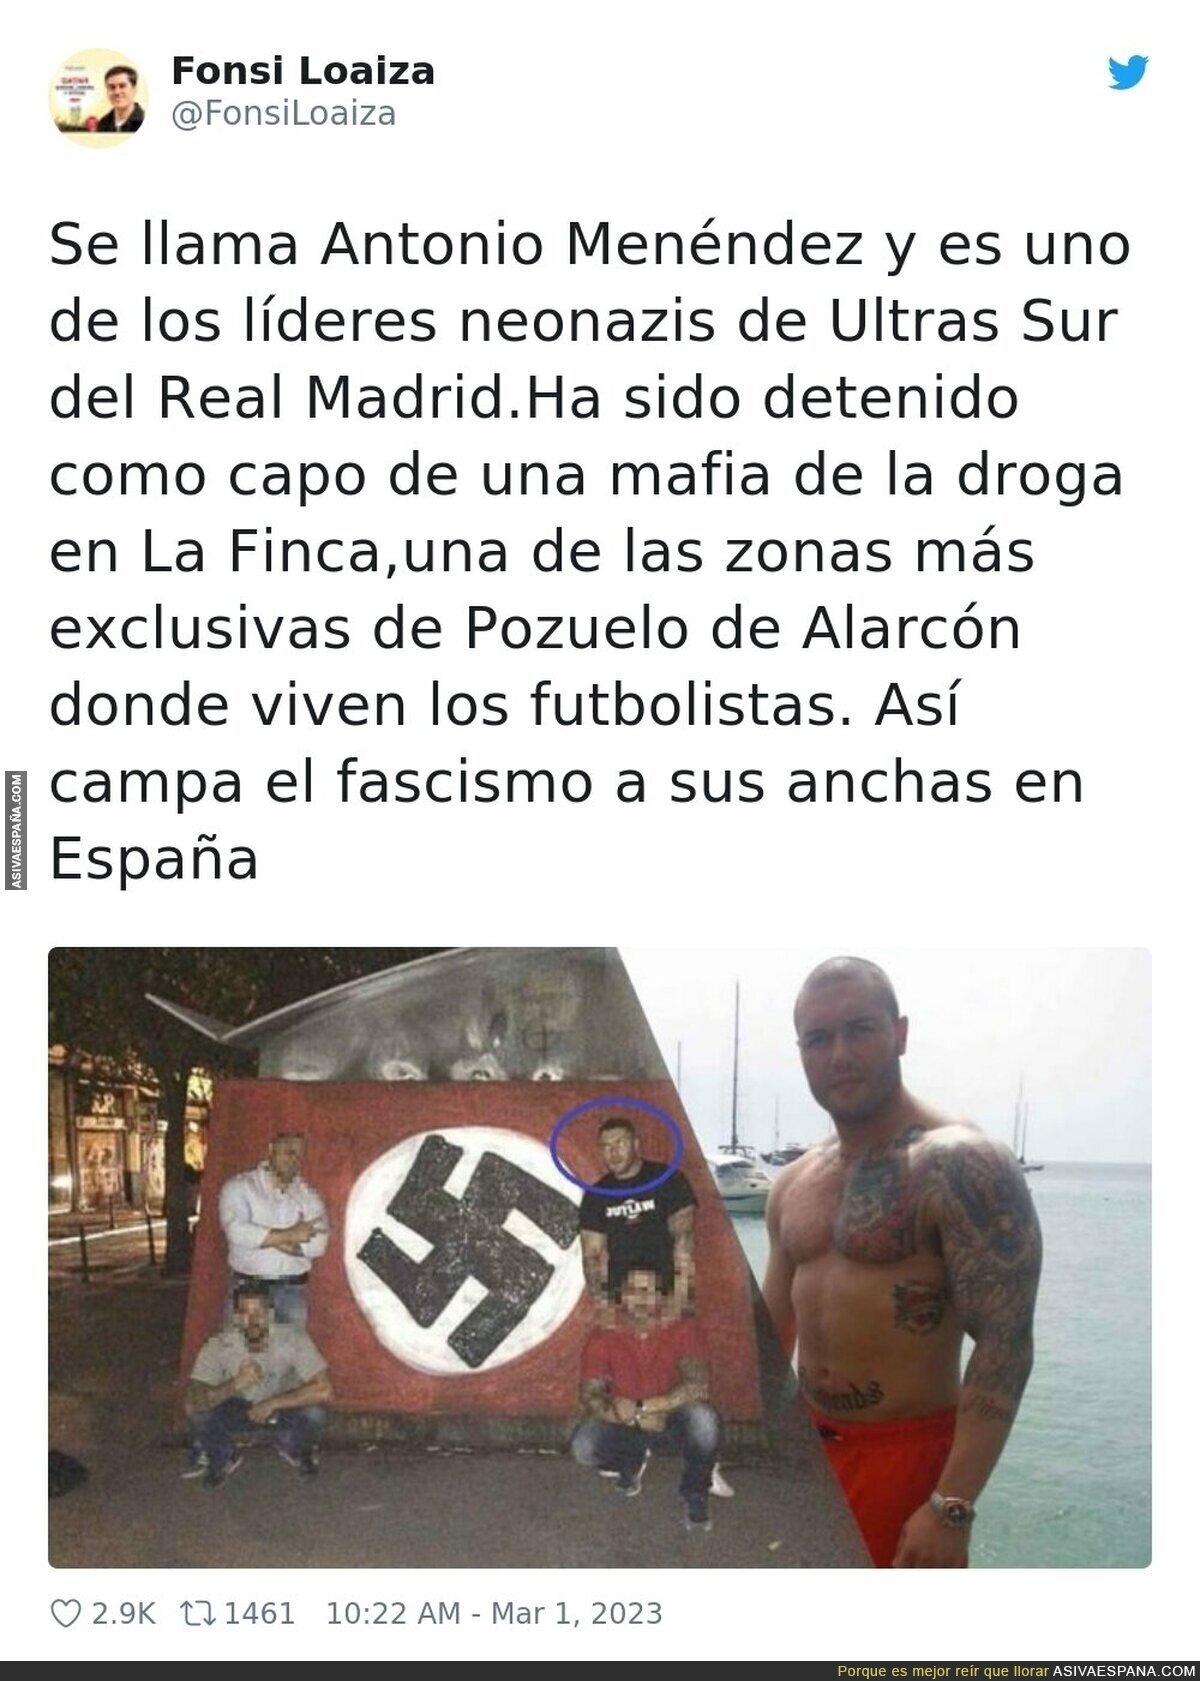 El fascismo tiene vía libre en España